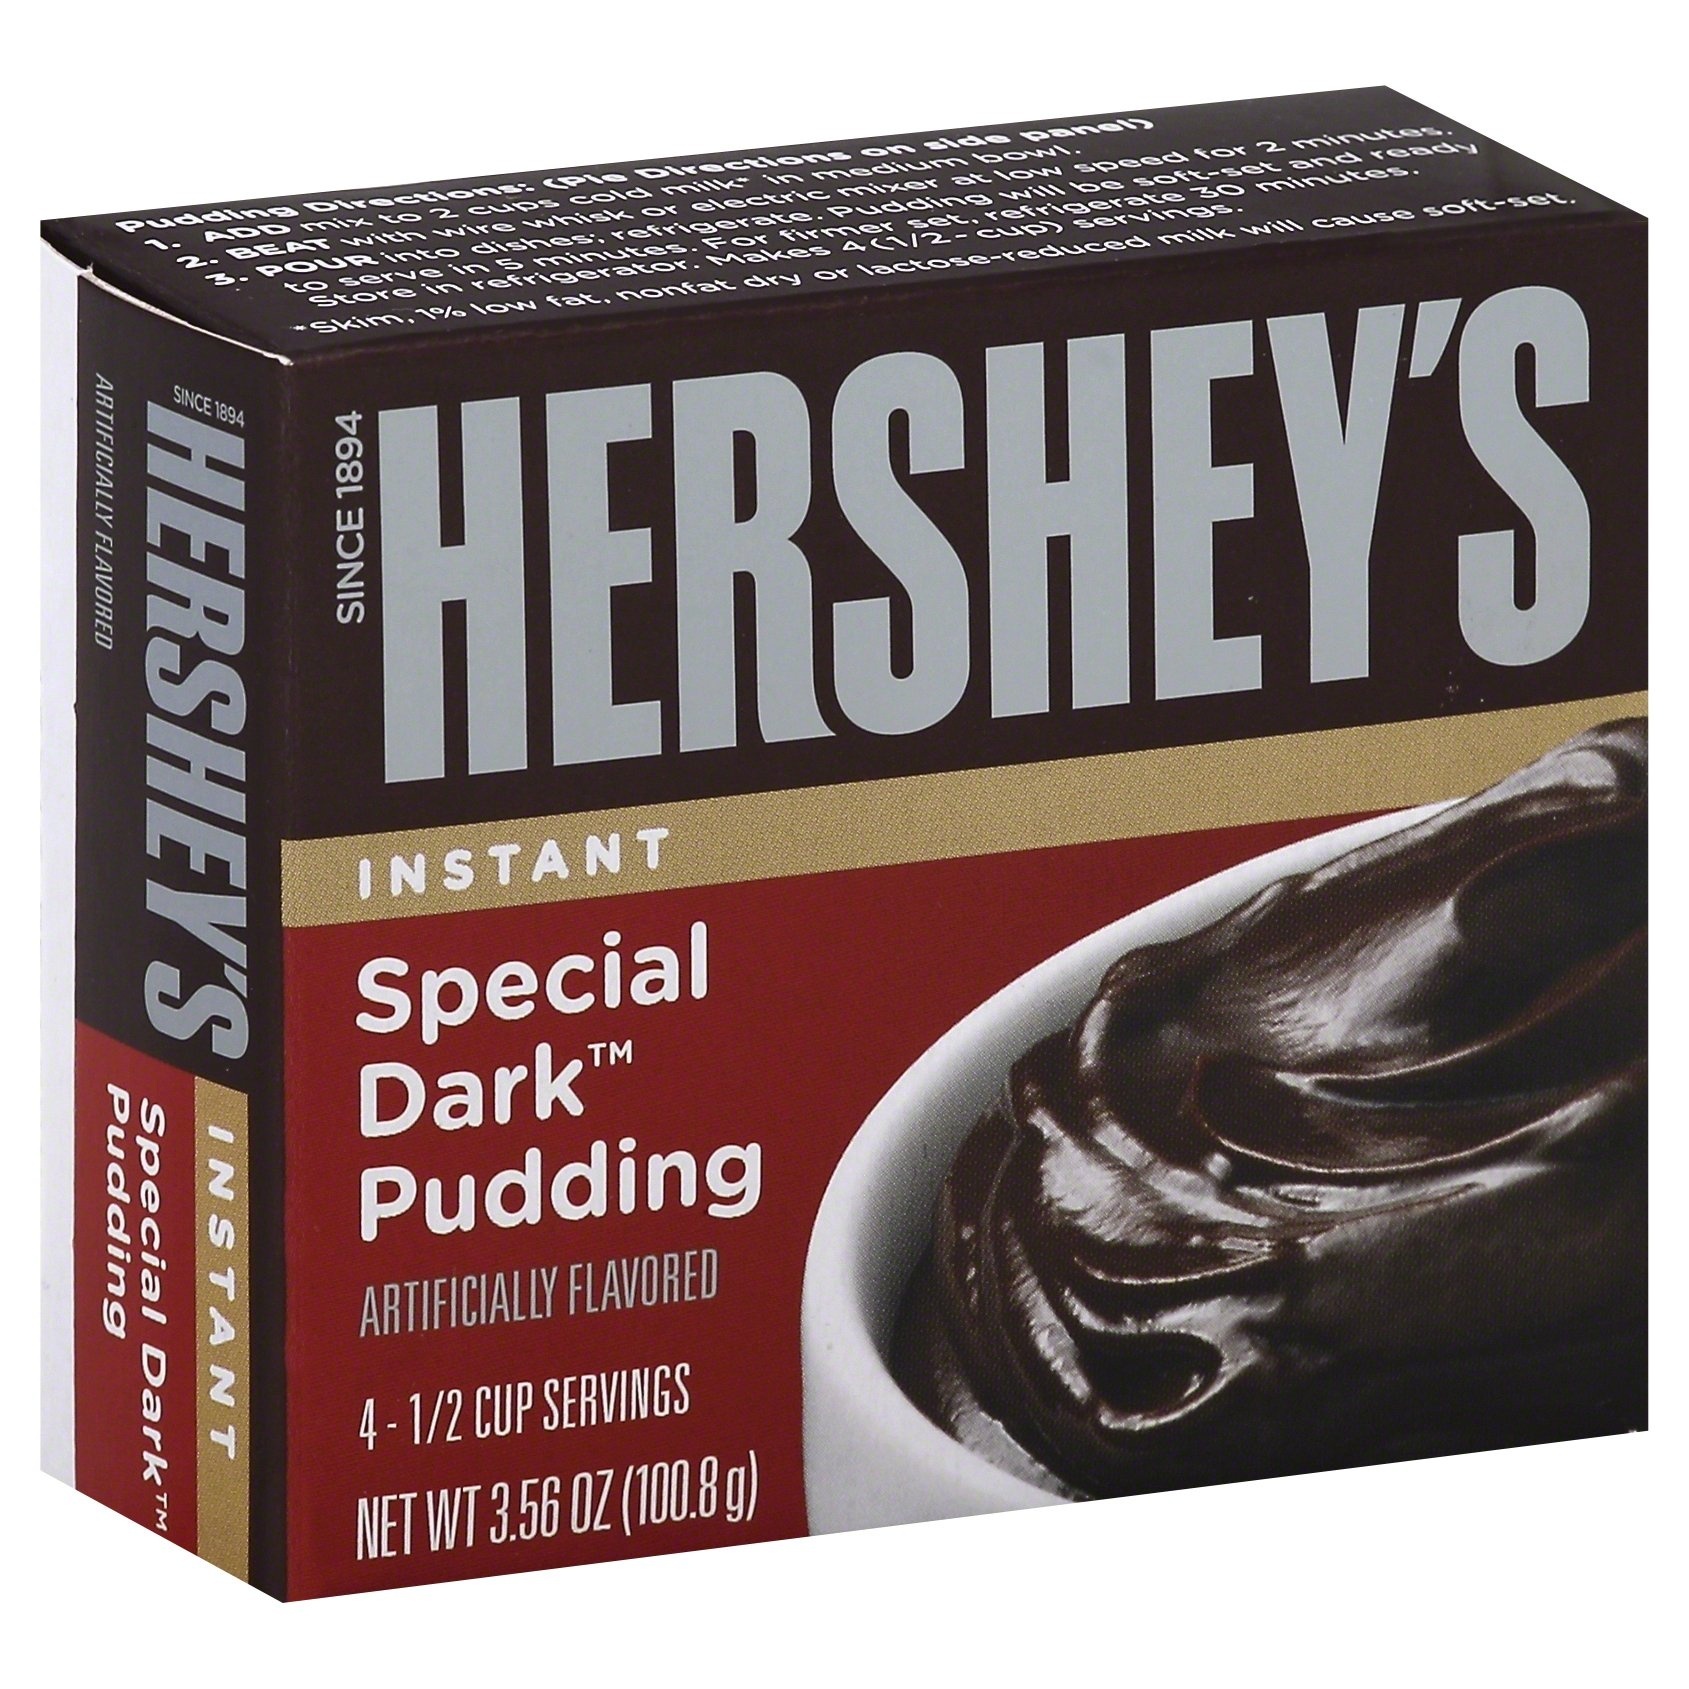 slide 1 of 1, Hershey's Van Pudding, 3.52 oz